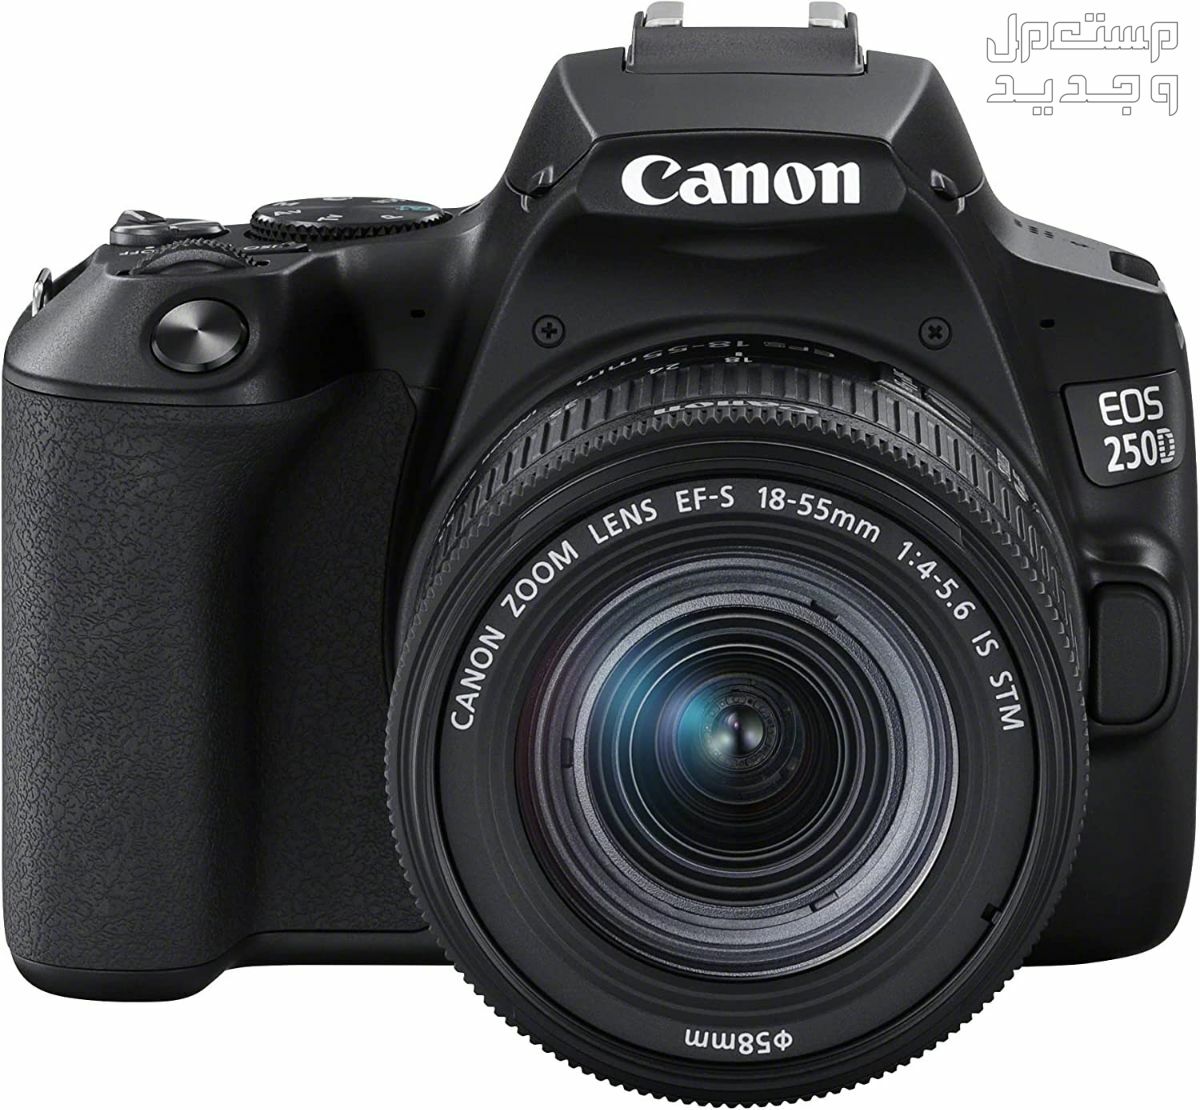 سعر ومميزات ومواصفات أرخص 5 كاميرات تصوير من كانون في عمان مميزات كاميرا Canon EOS 250D